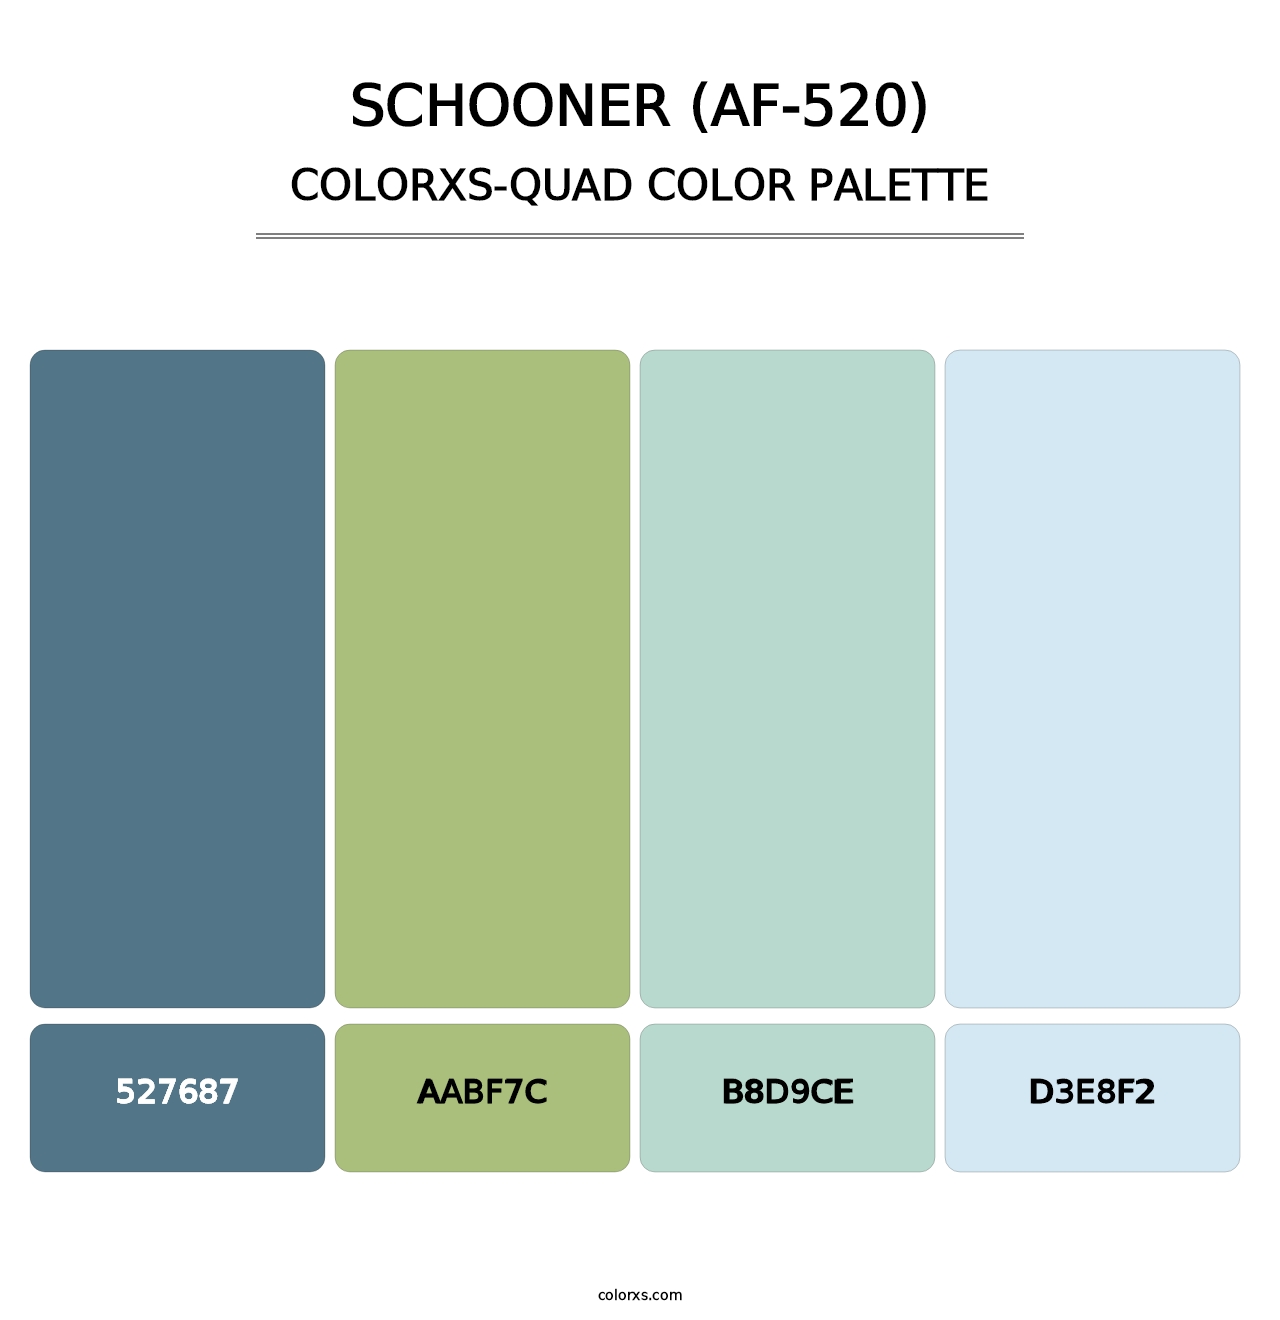 Schooner (AF-520) - Colorxs Quad Palette